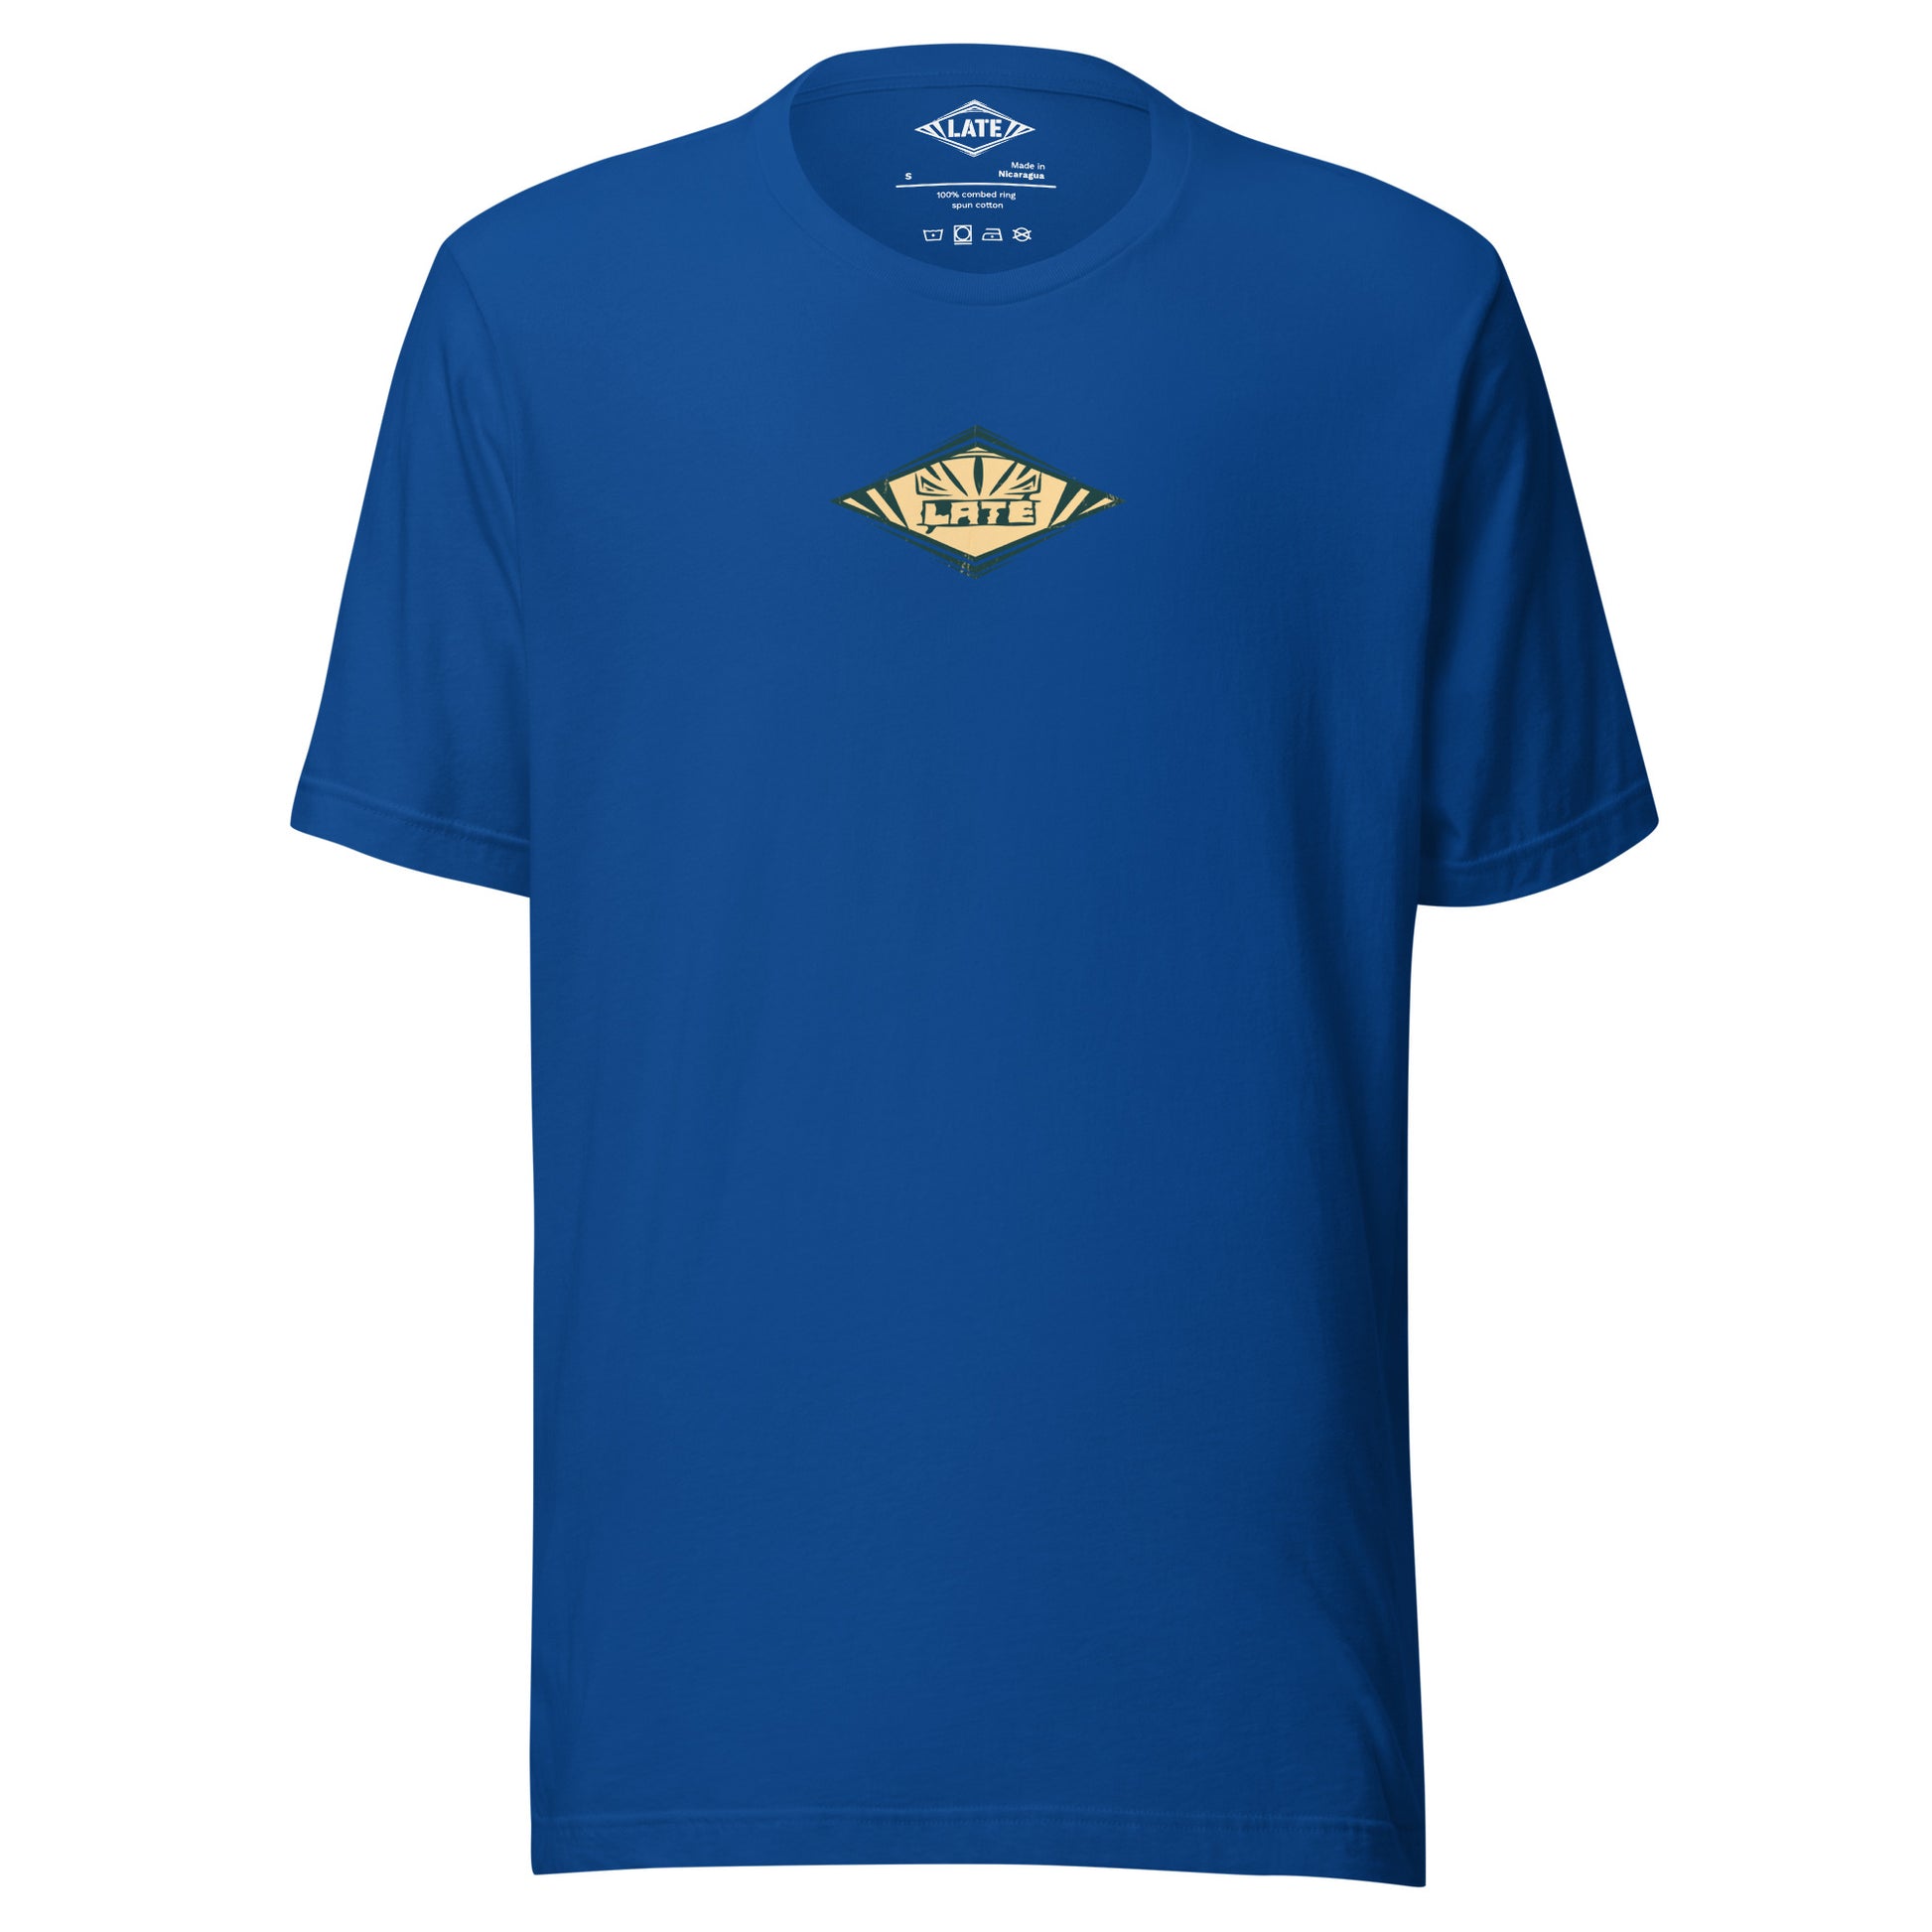 T-Shirt rétro Radical Wave, inspiration maori et vagues des spots mondiaux. Tee shirt unisexe de face bleu